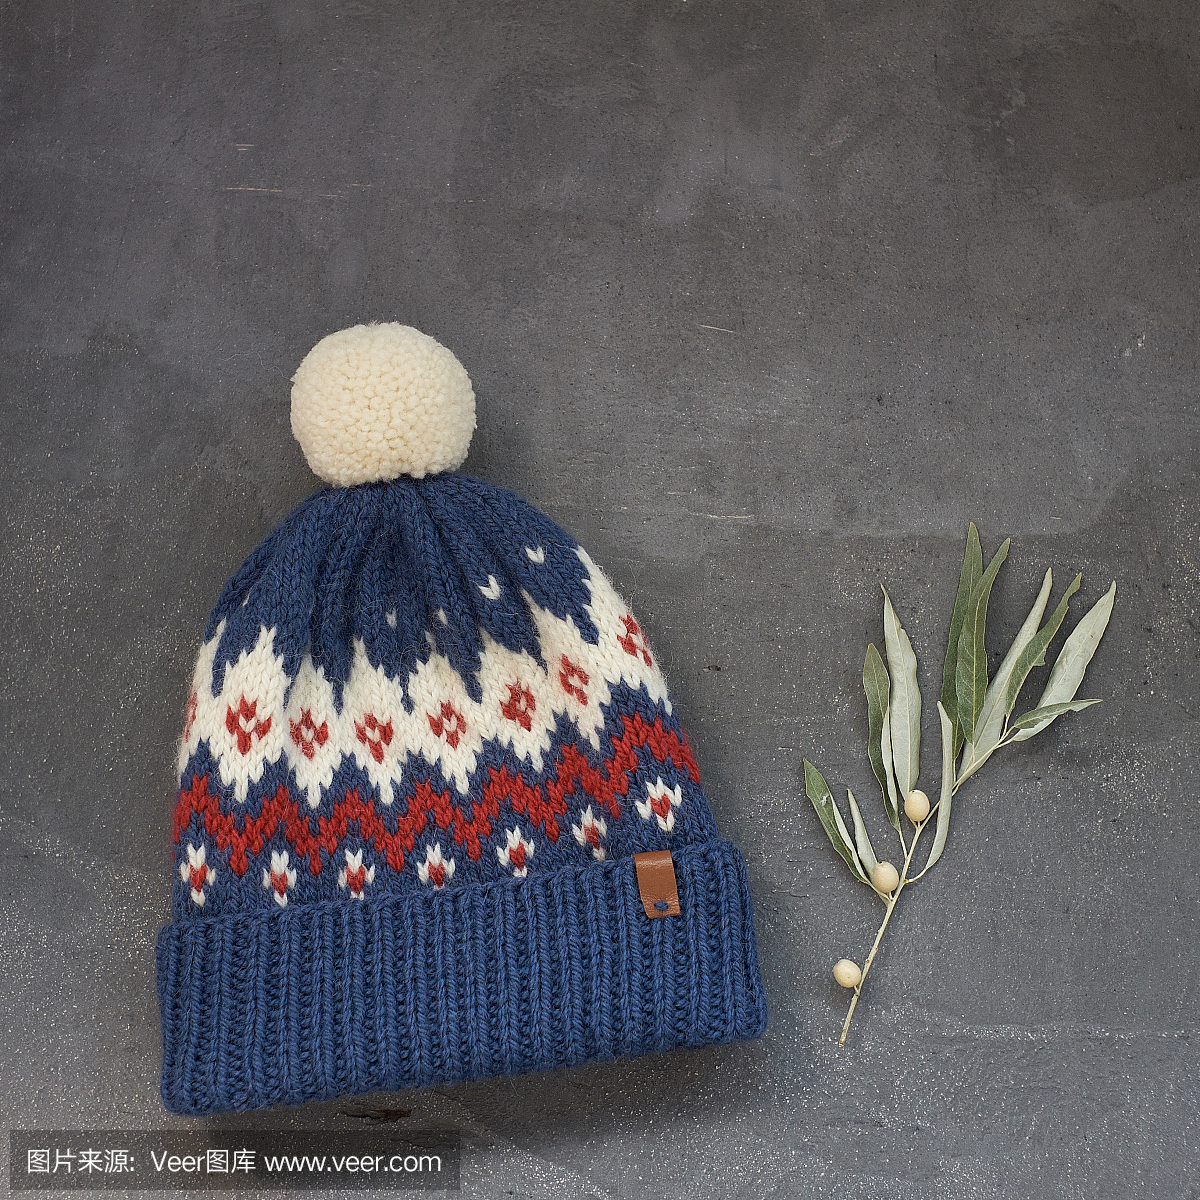 与灰色的背景上的提花图案的蓝色冬季帽子